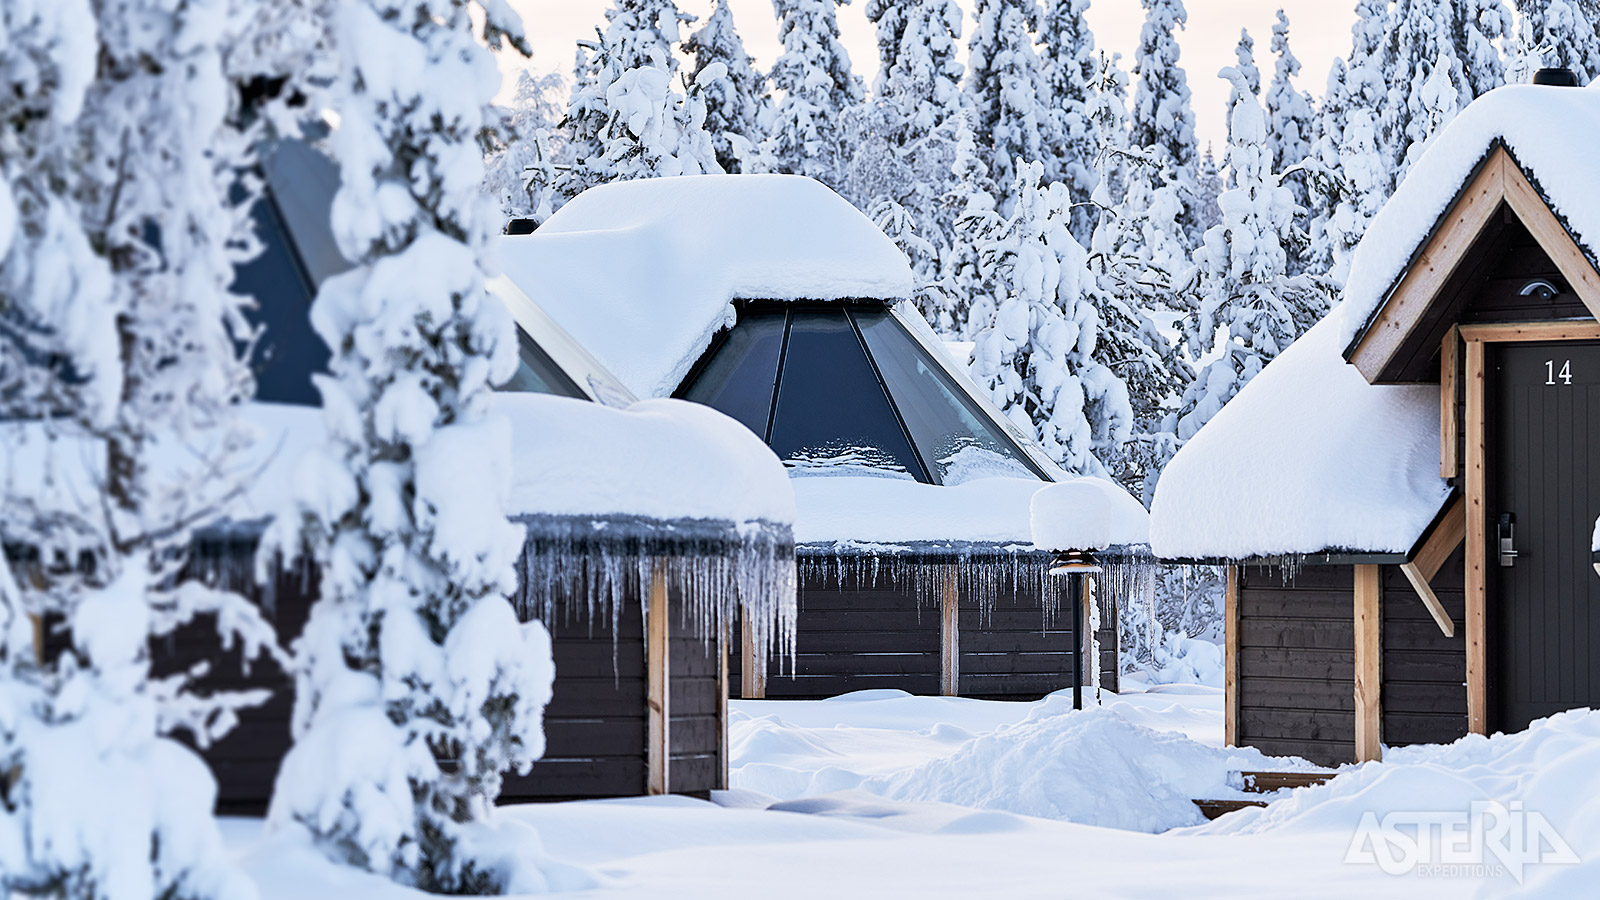 Ontdek de betoverende schoonheid van Lapland tijdens een heerlijk verblijf in de Northern Lights Village Levi